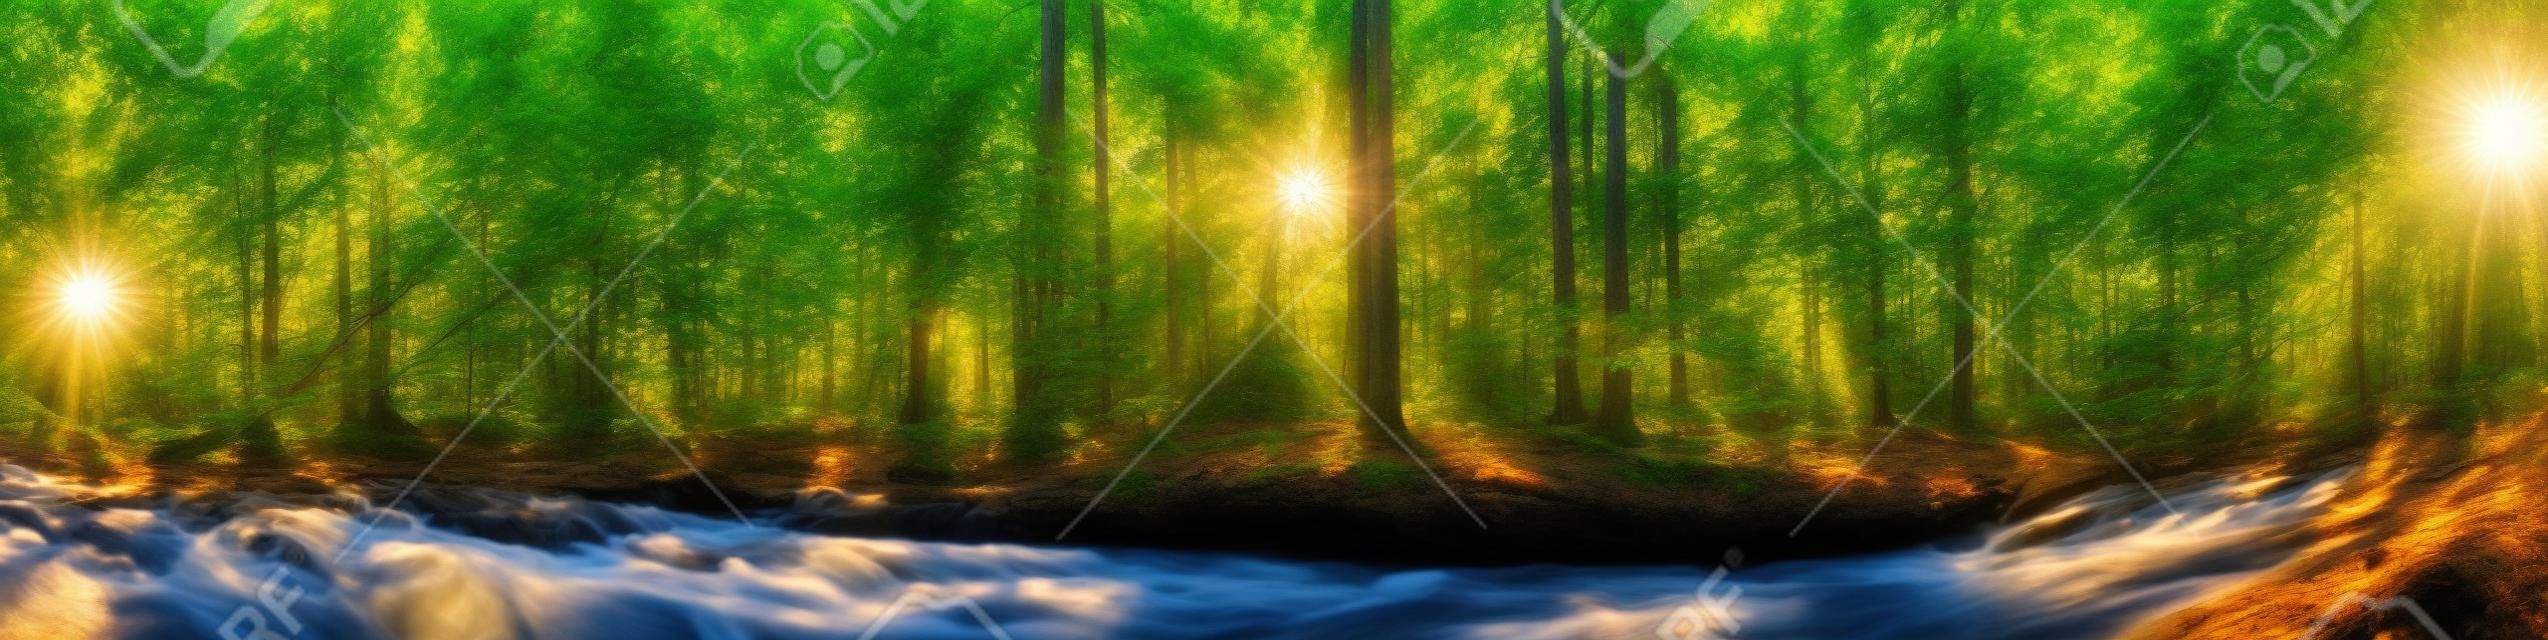 Красивая панорама леса с деревьями, ручей и солнце